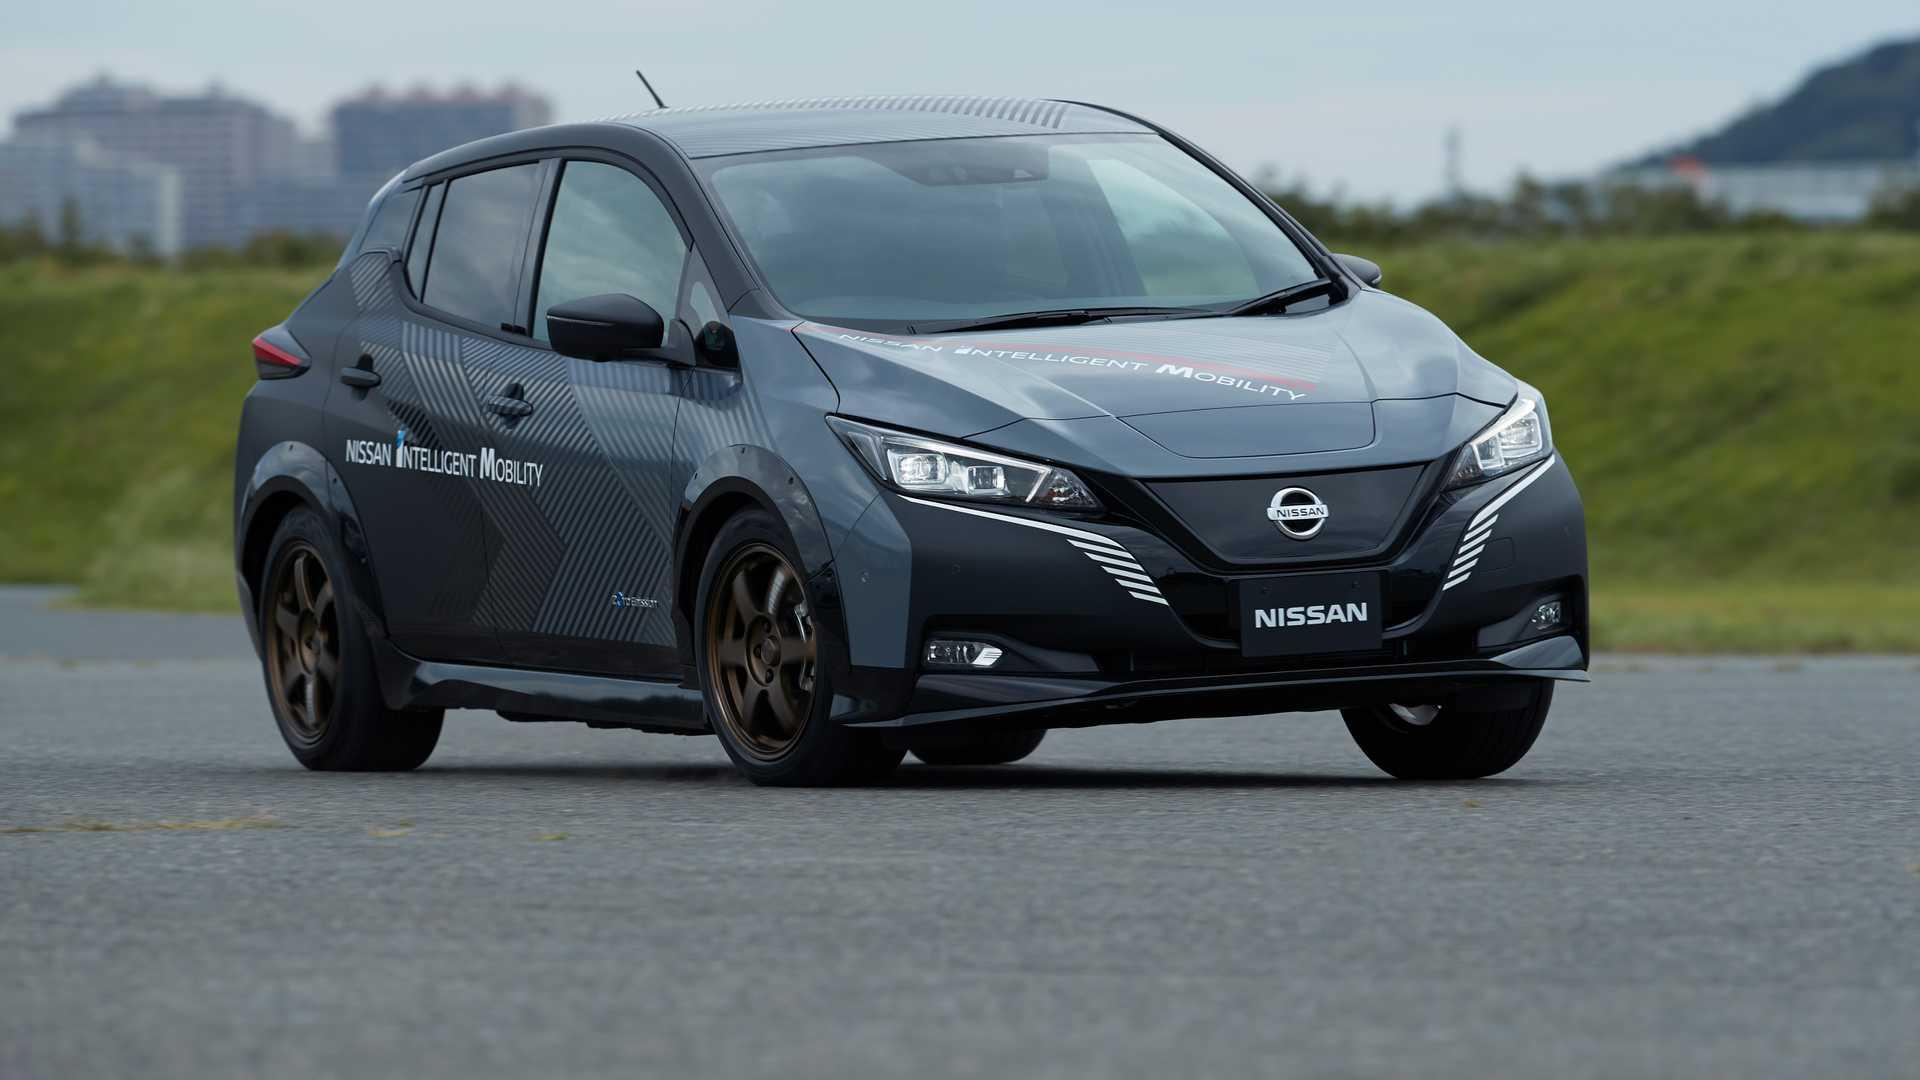 Nissan Leaf ที่ใช้ 2 มอเตอร์ไฟฟ้าจะกลายเป็นต้นแบบรถยนต์ EV ขับเคลื่อนสี่ล้อ